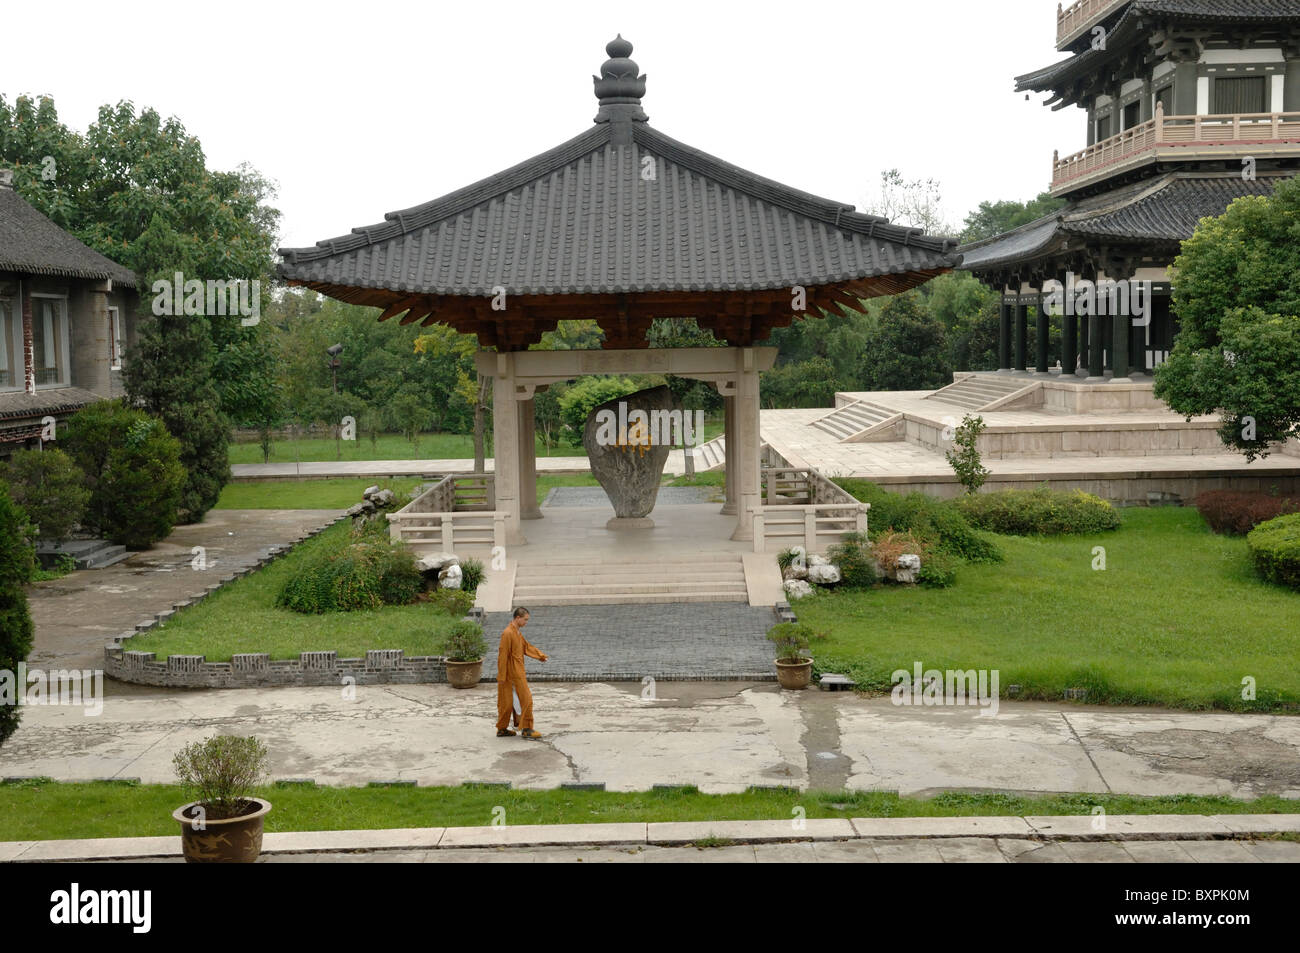 A lone Monk walking in the gardens Da Ming Buddhist temple in Yangzhou Jiangsu Province of China Stock Photo